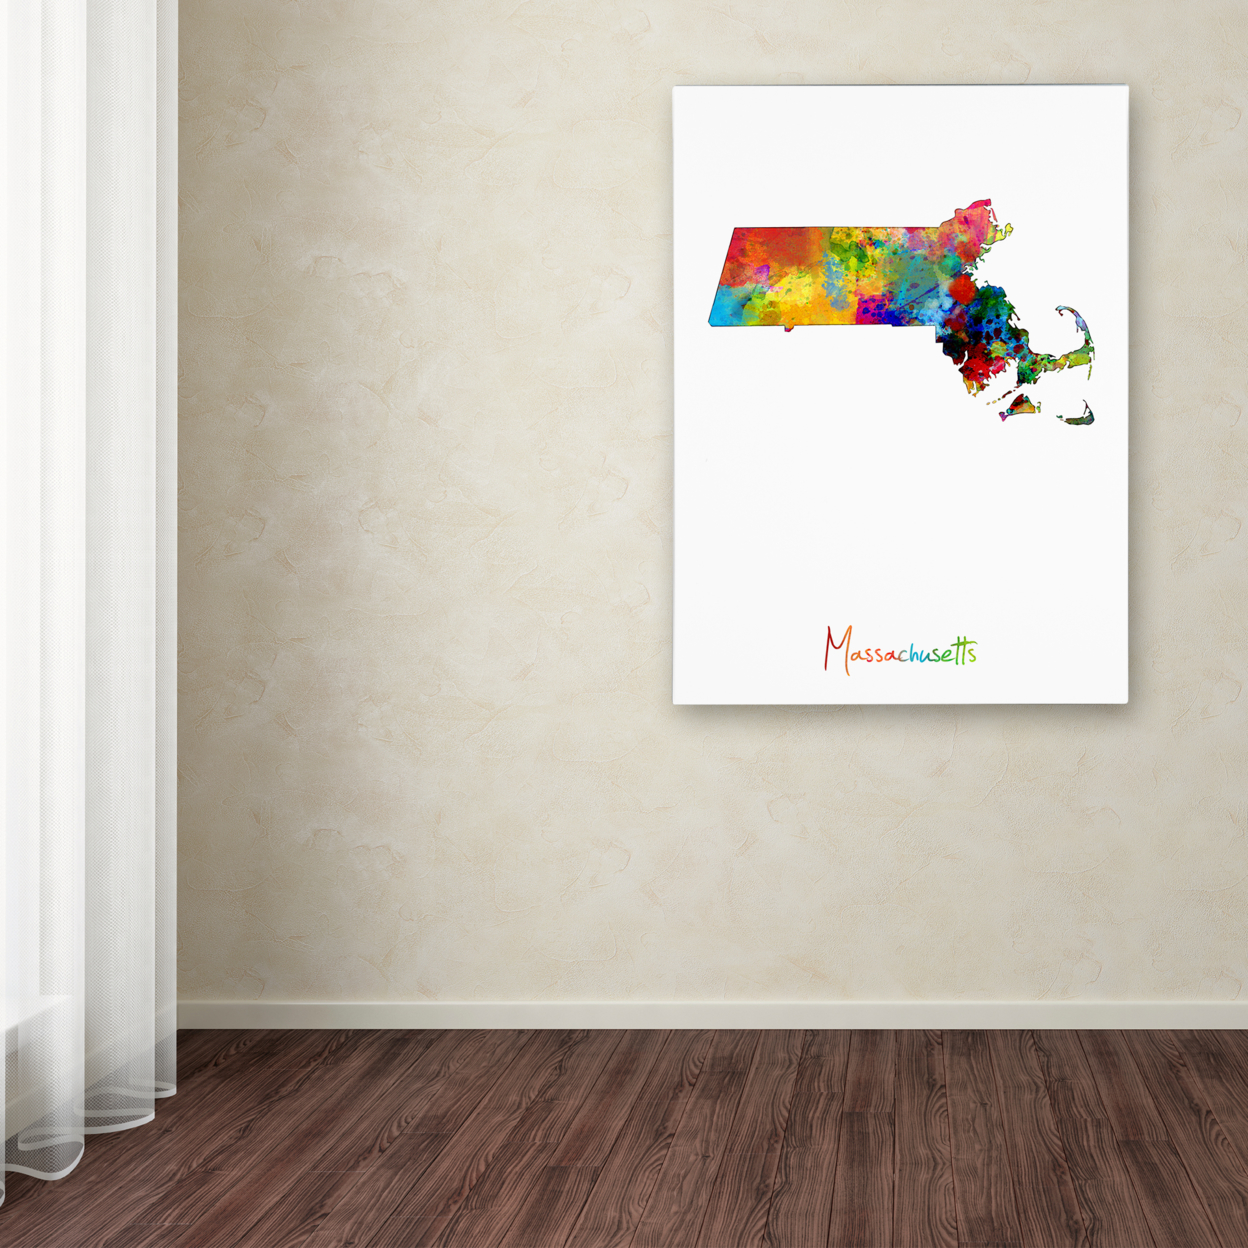 Michael Tompsett 'Massachusetts Map' Canvas Wall Art 35 X 47 Inches